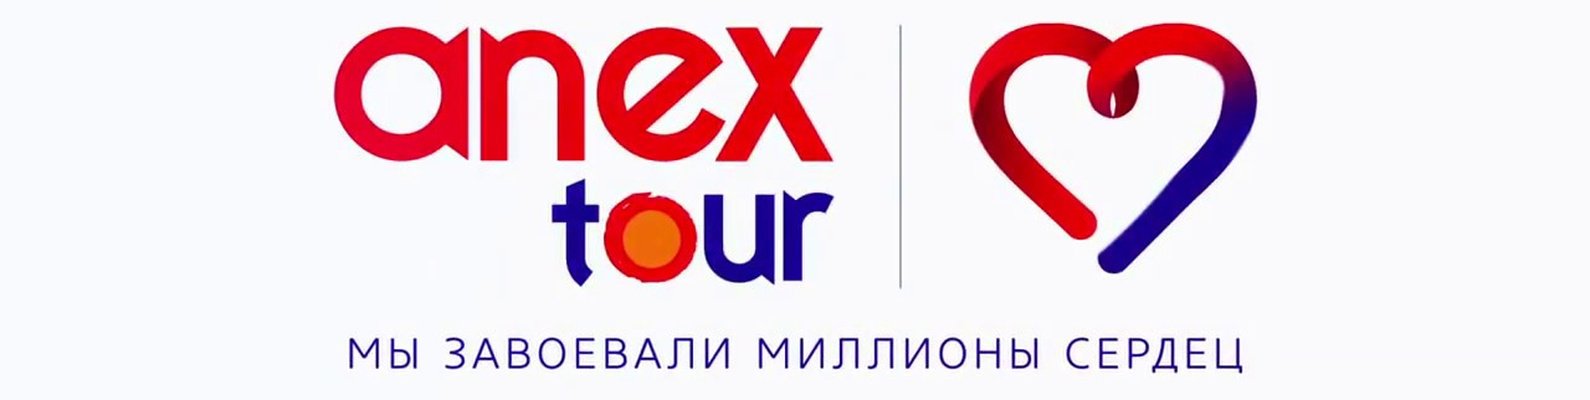 Сайт анекс тур ростов. Анекс туроператор. Анекс тур о компании. Анекс лого. Анекс тур Красноярск.